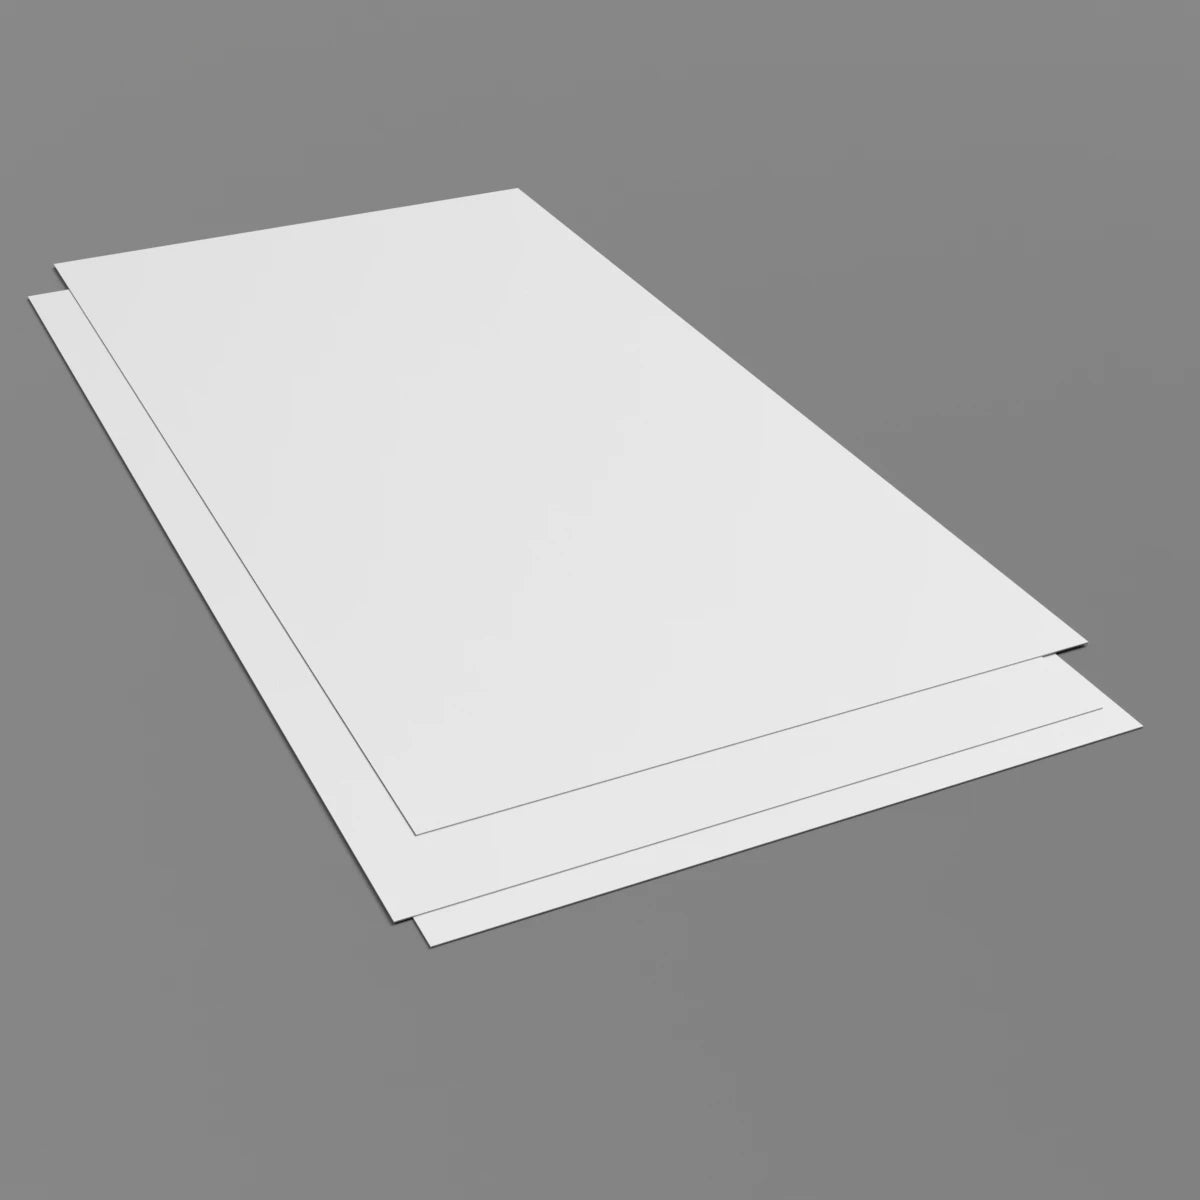 2.5mm White Hygienic Wall Cladding Sheet